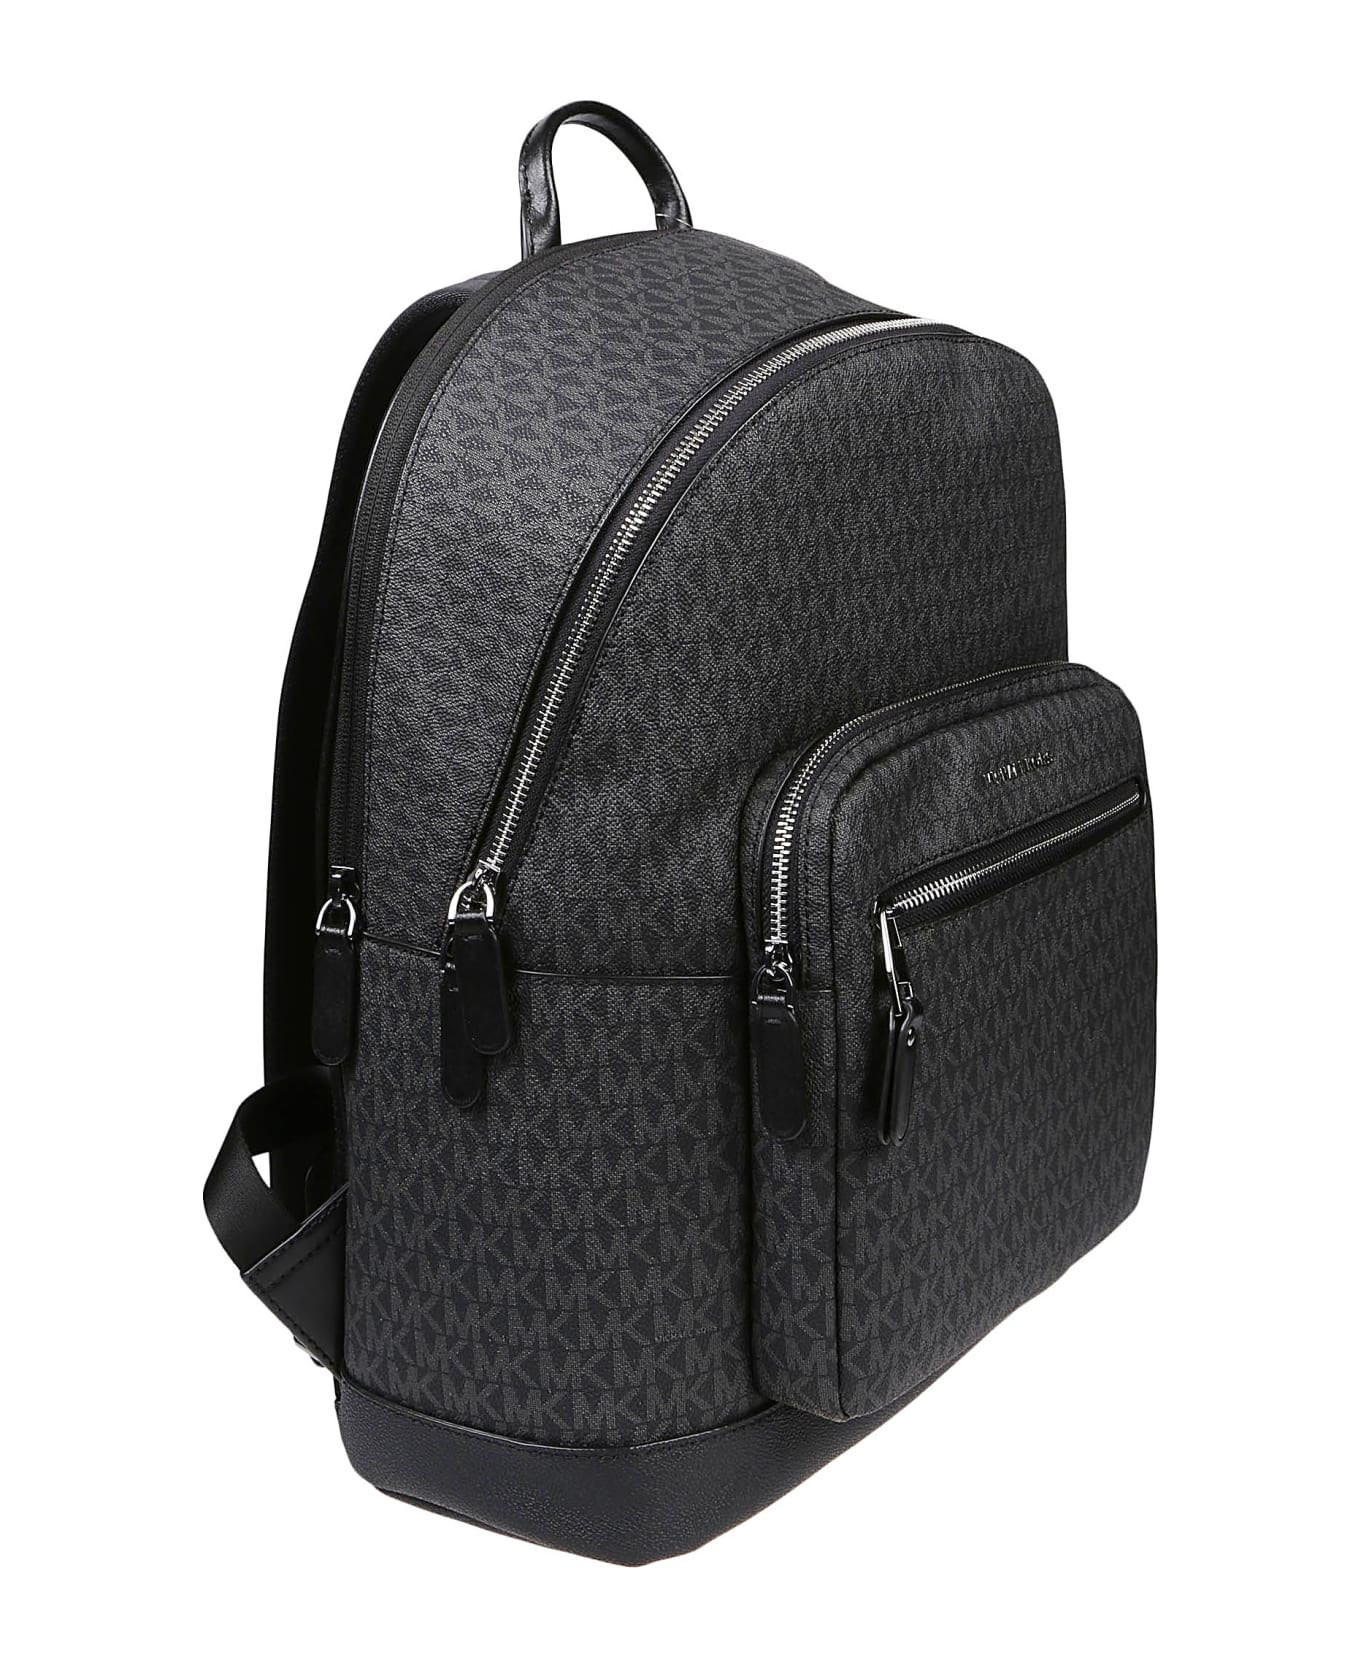 Michael Kors Hudson Commuter Backpack - Black